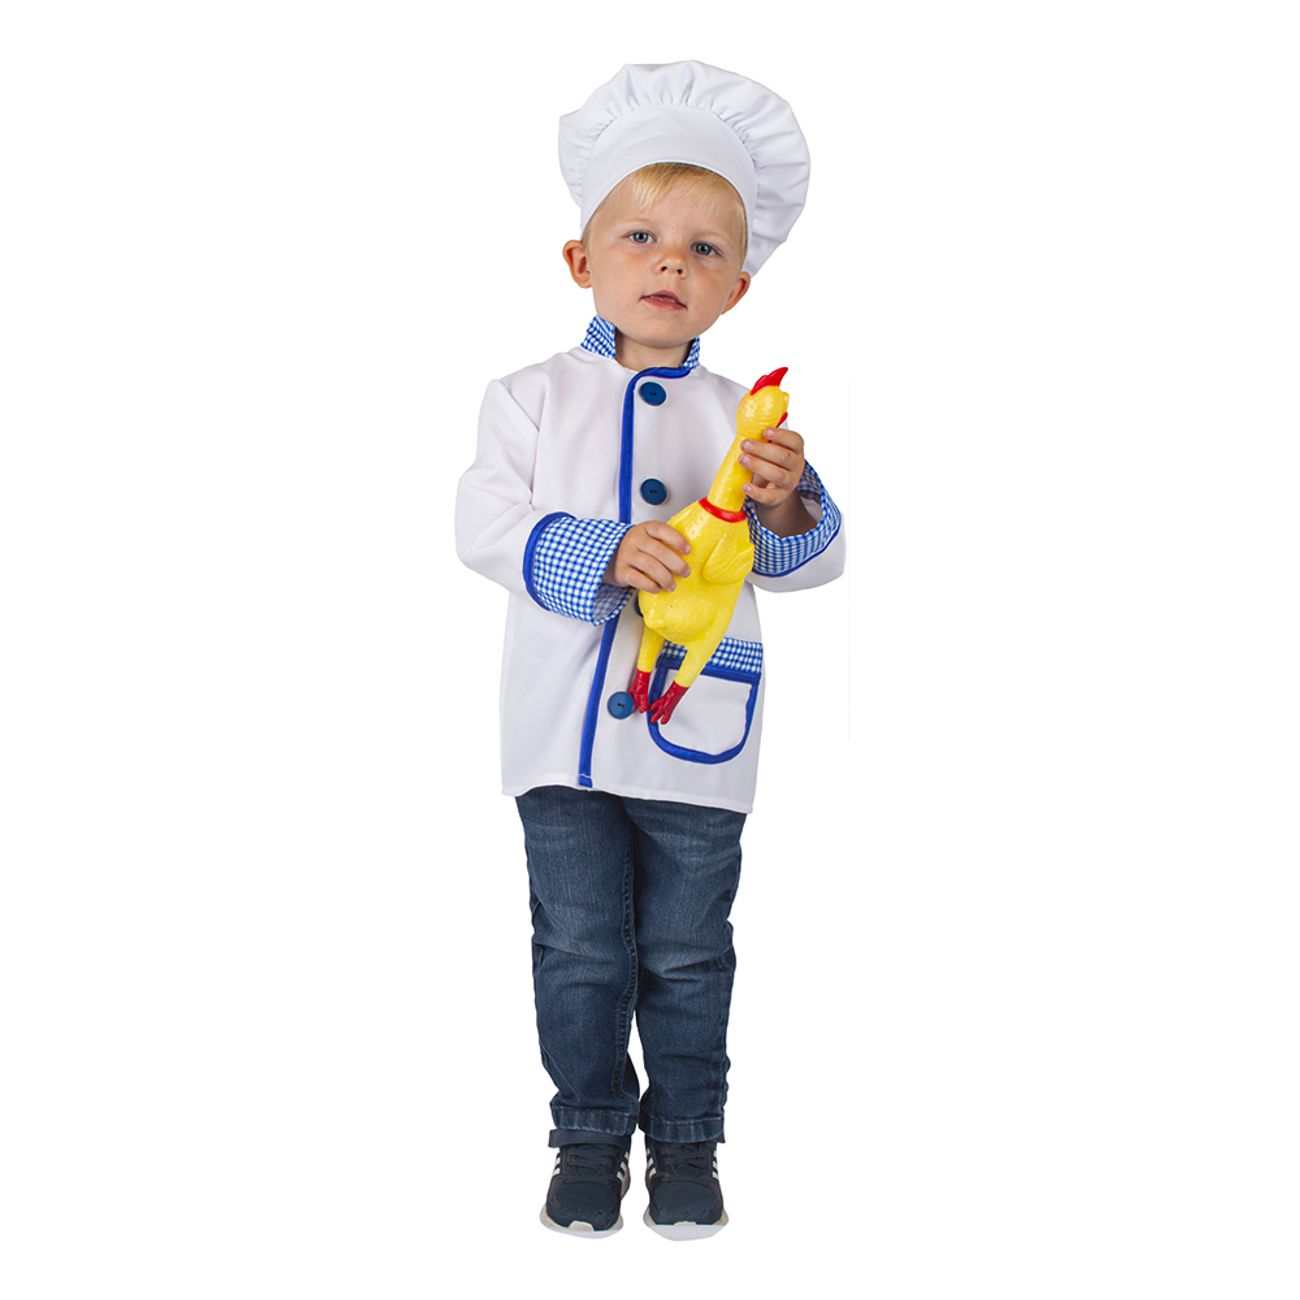 kock-barn-maskeraddrakt-87565-1